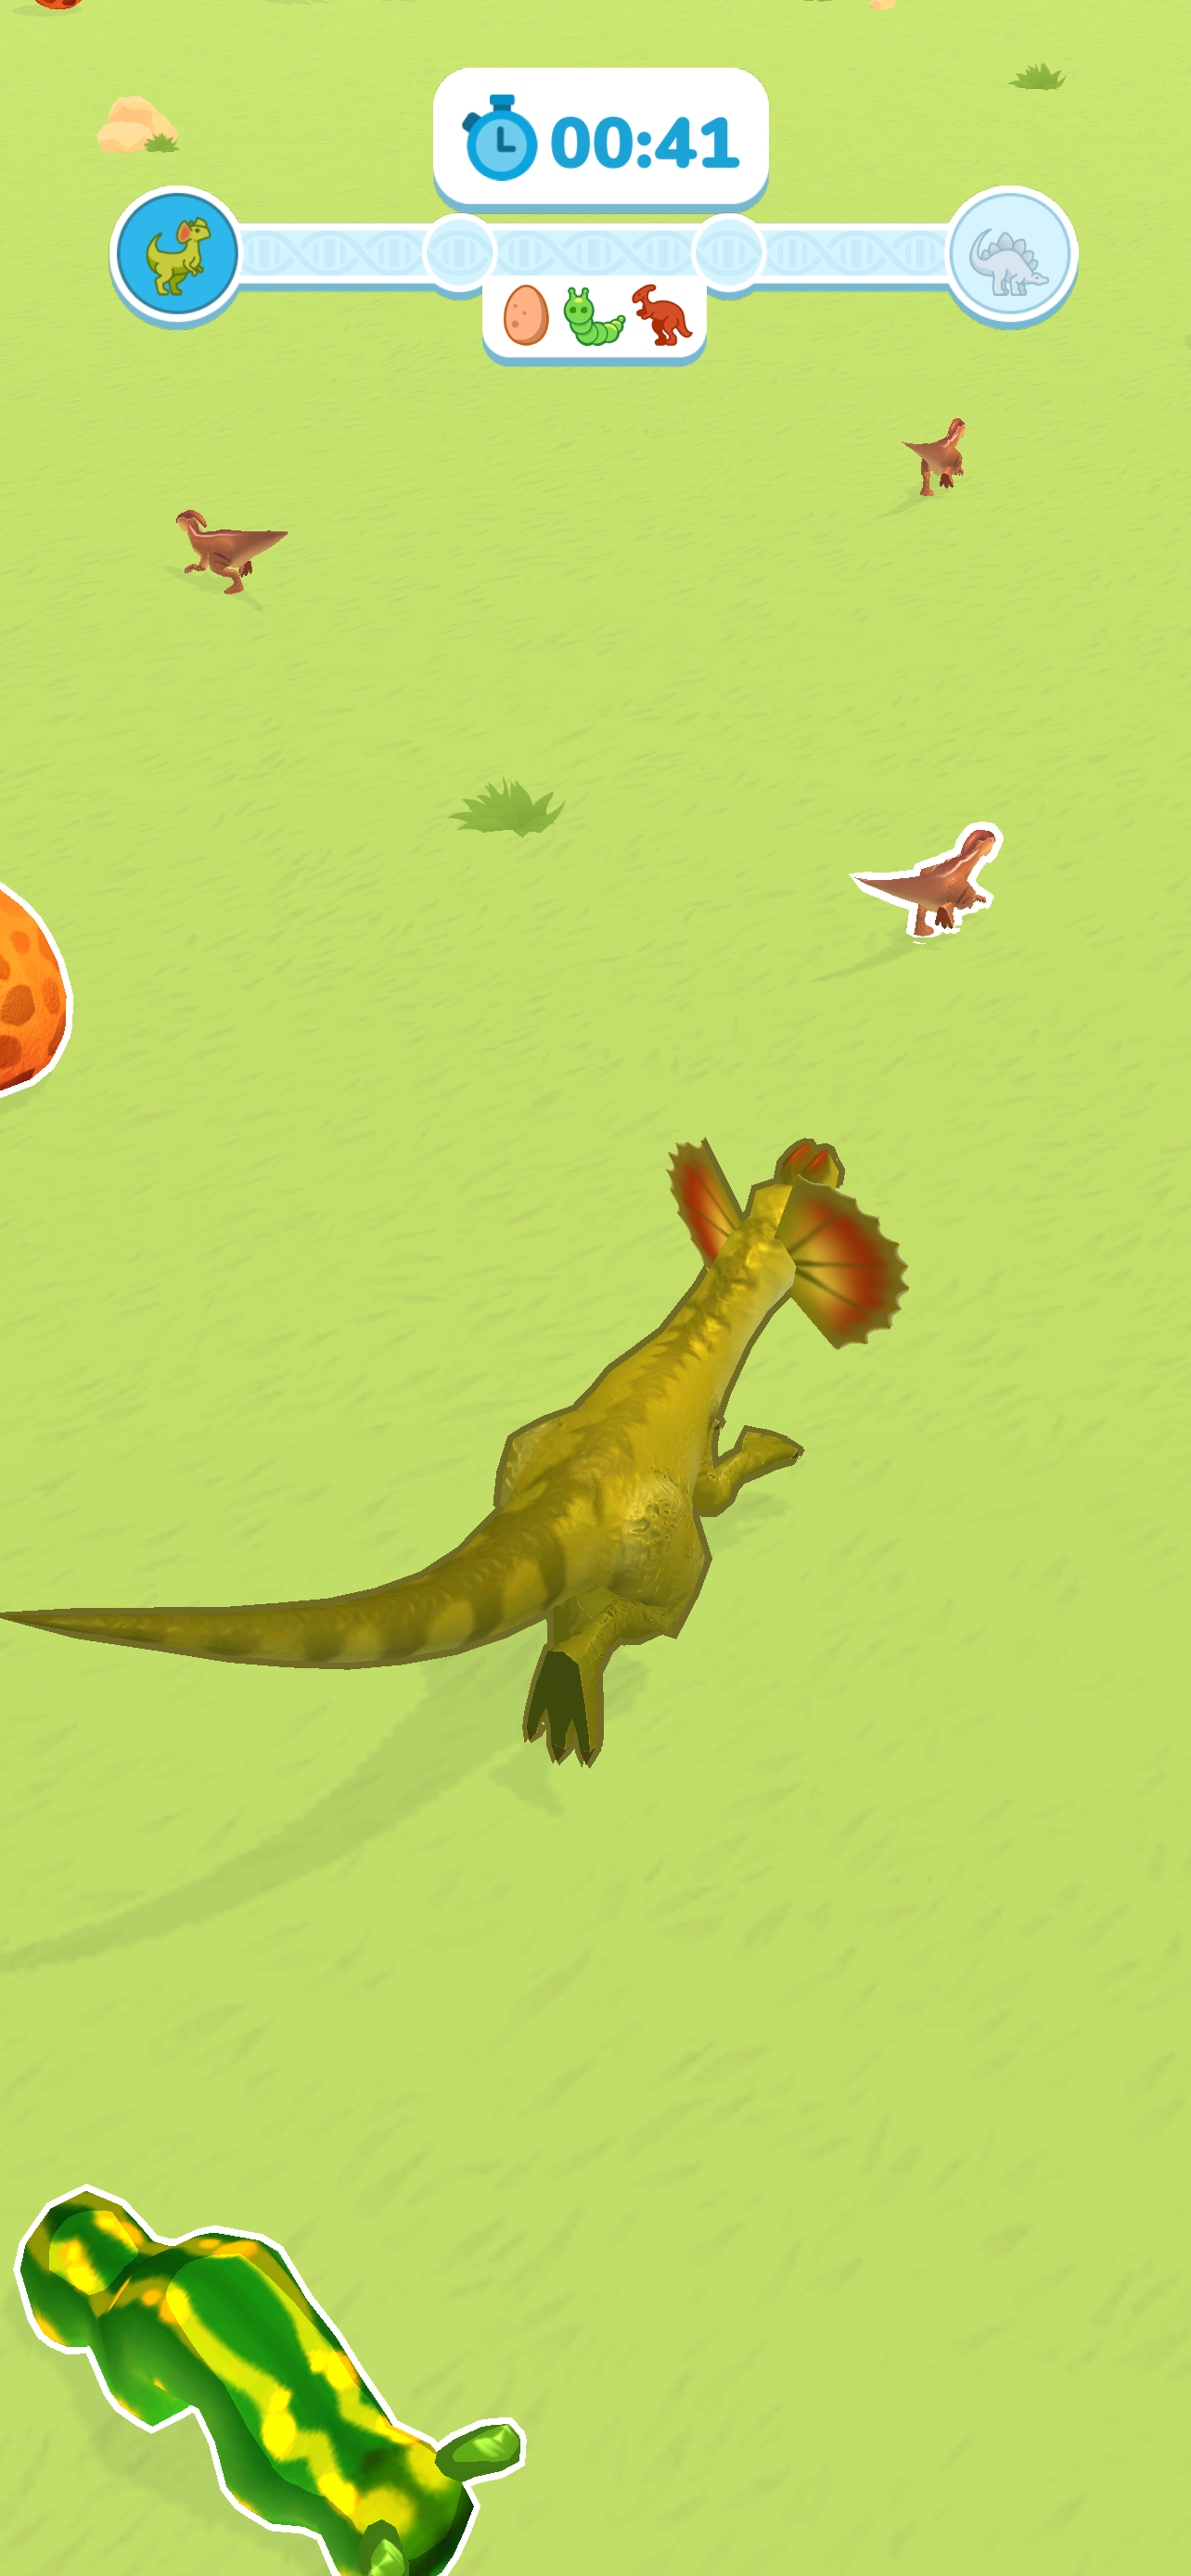 Dino Evolution 3D - Jogo Gratuito Online